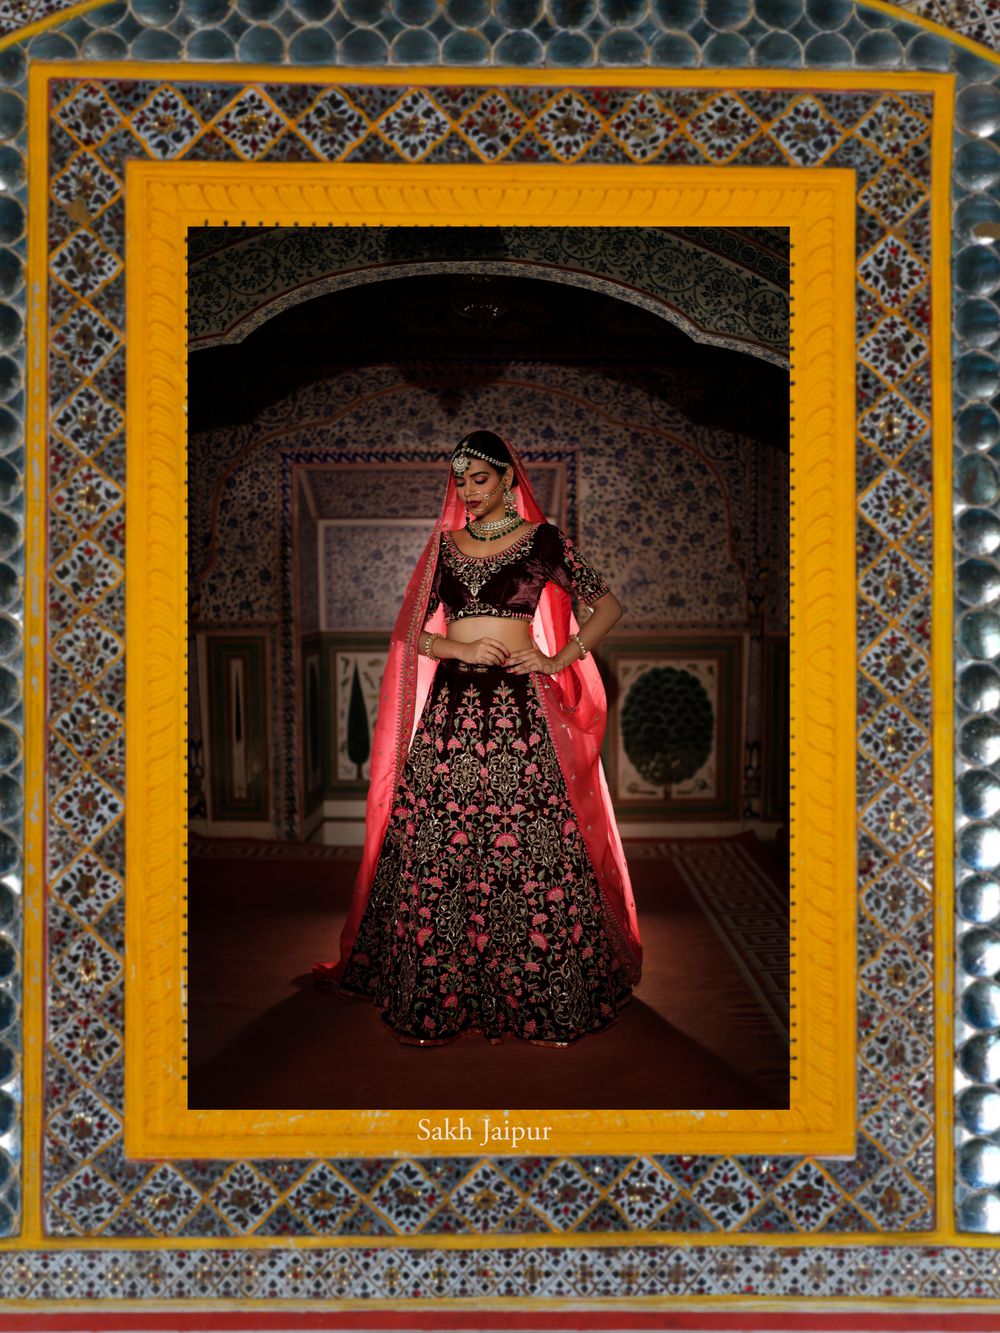 Photo By Sakh Jaipur - Bridal Wear